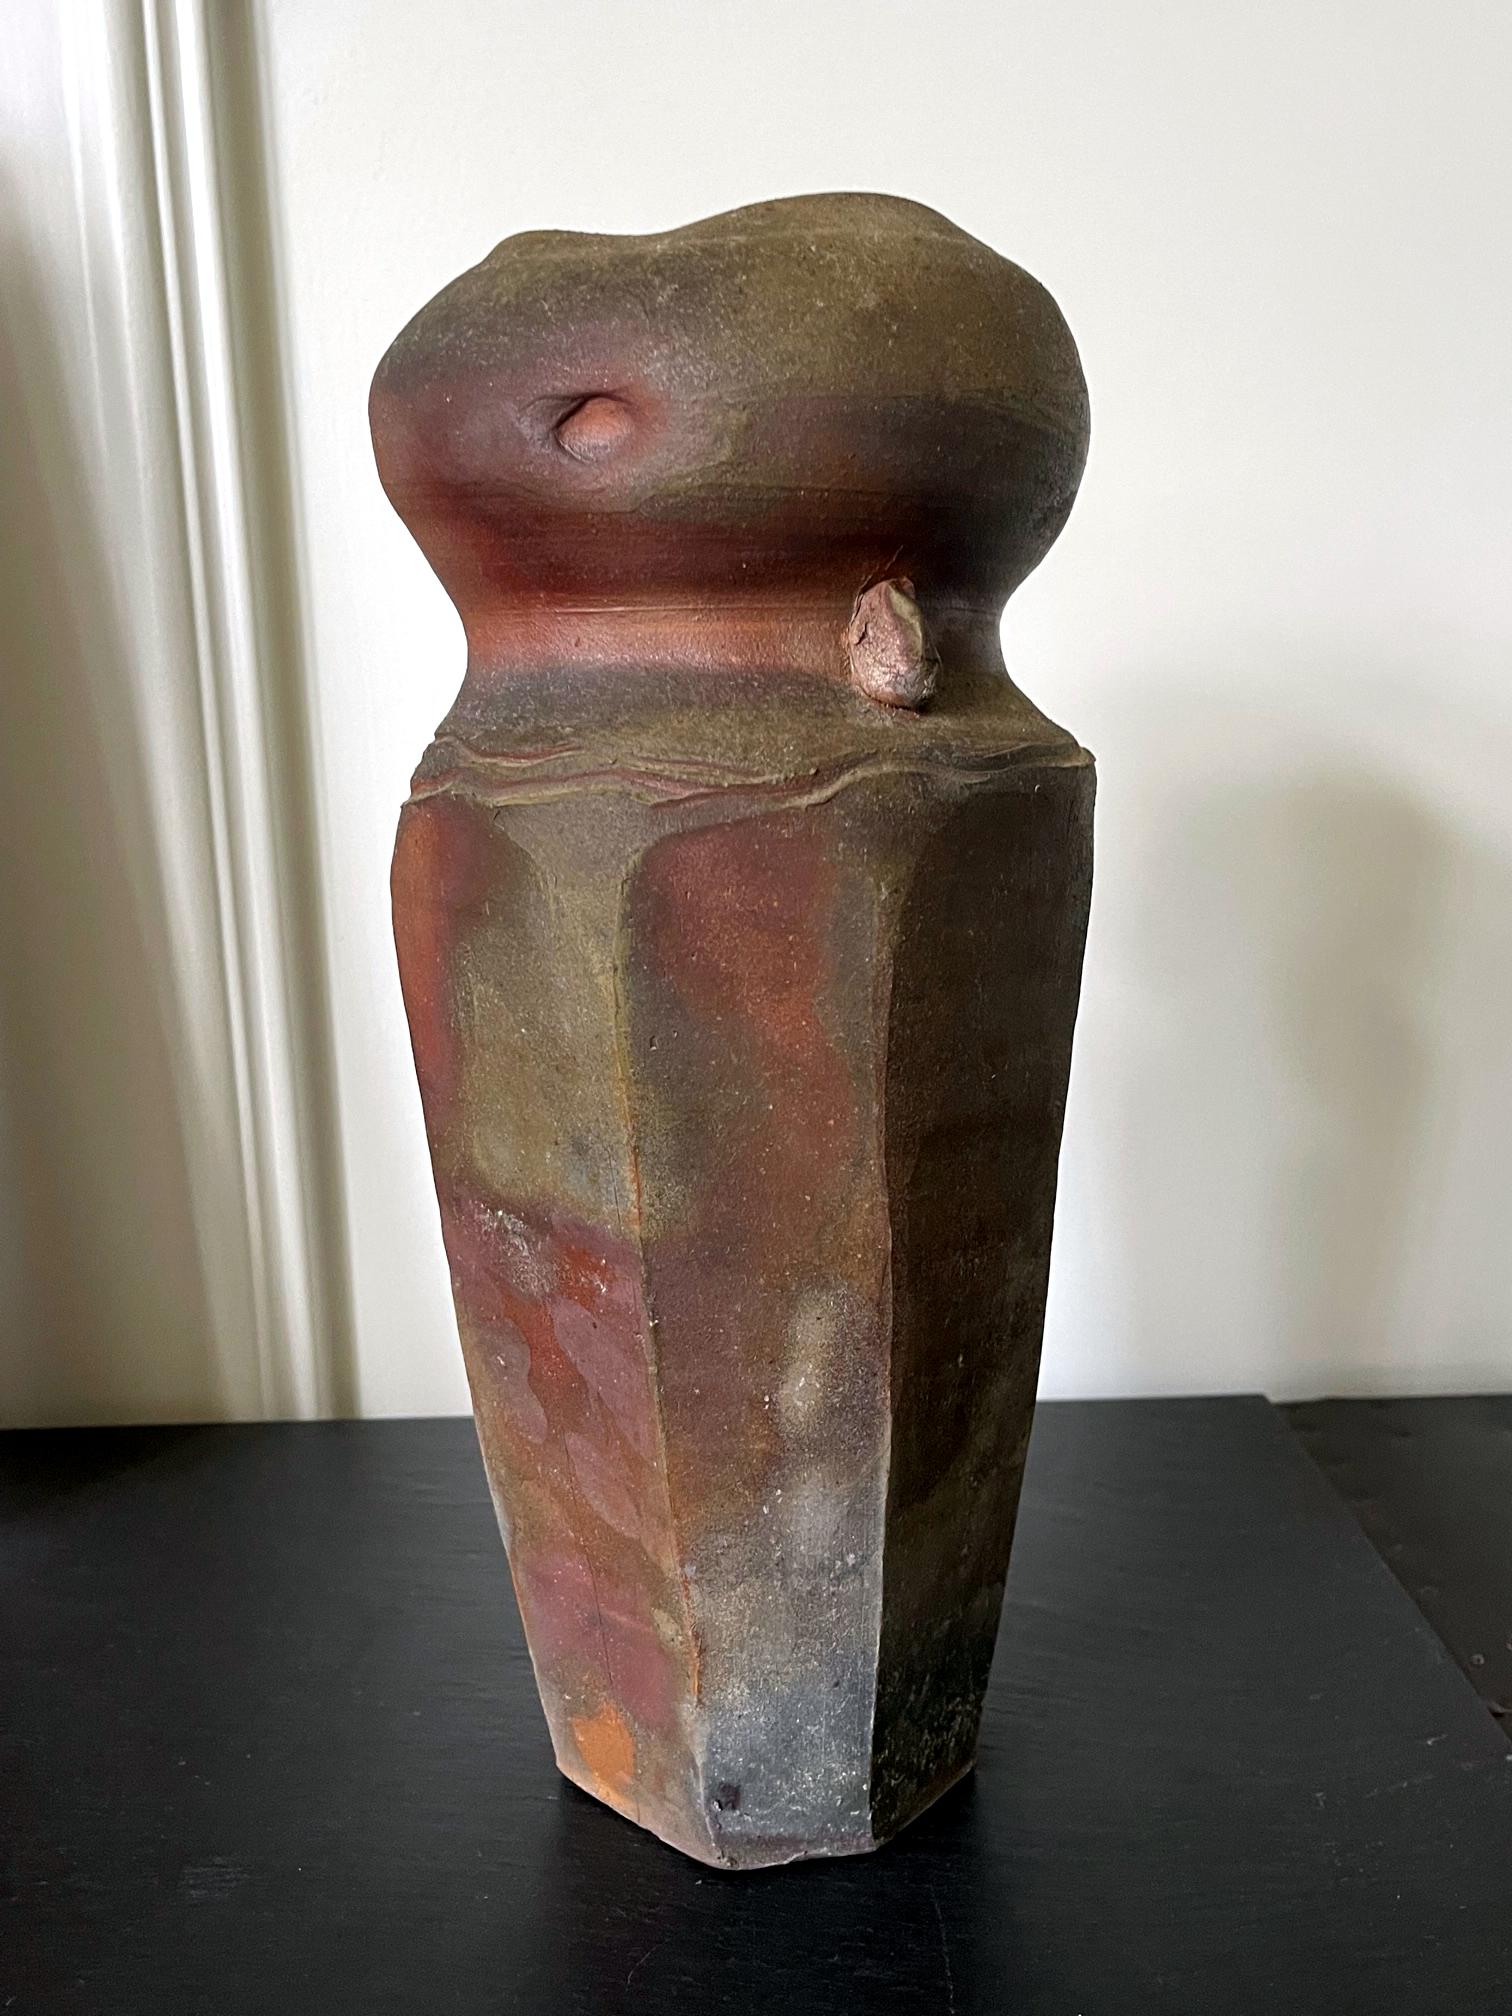 Un vase en grès de Paul Chaleff (1947-) réalisé en 1984. Chaleff est connu pour ses récipients en céramique cuits au bois, sans glaçure ou parfois avec une glaçure cendrée naturelle. Le vase proposé est d'une forme très géométrique avec un corps